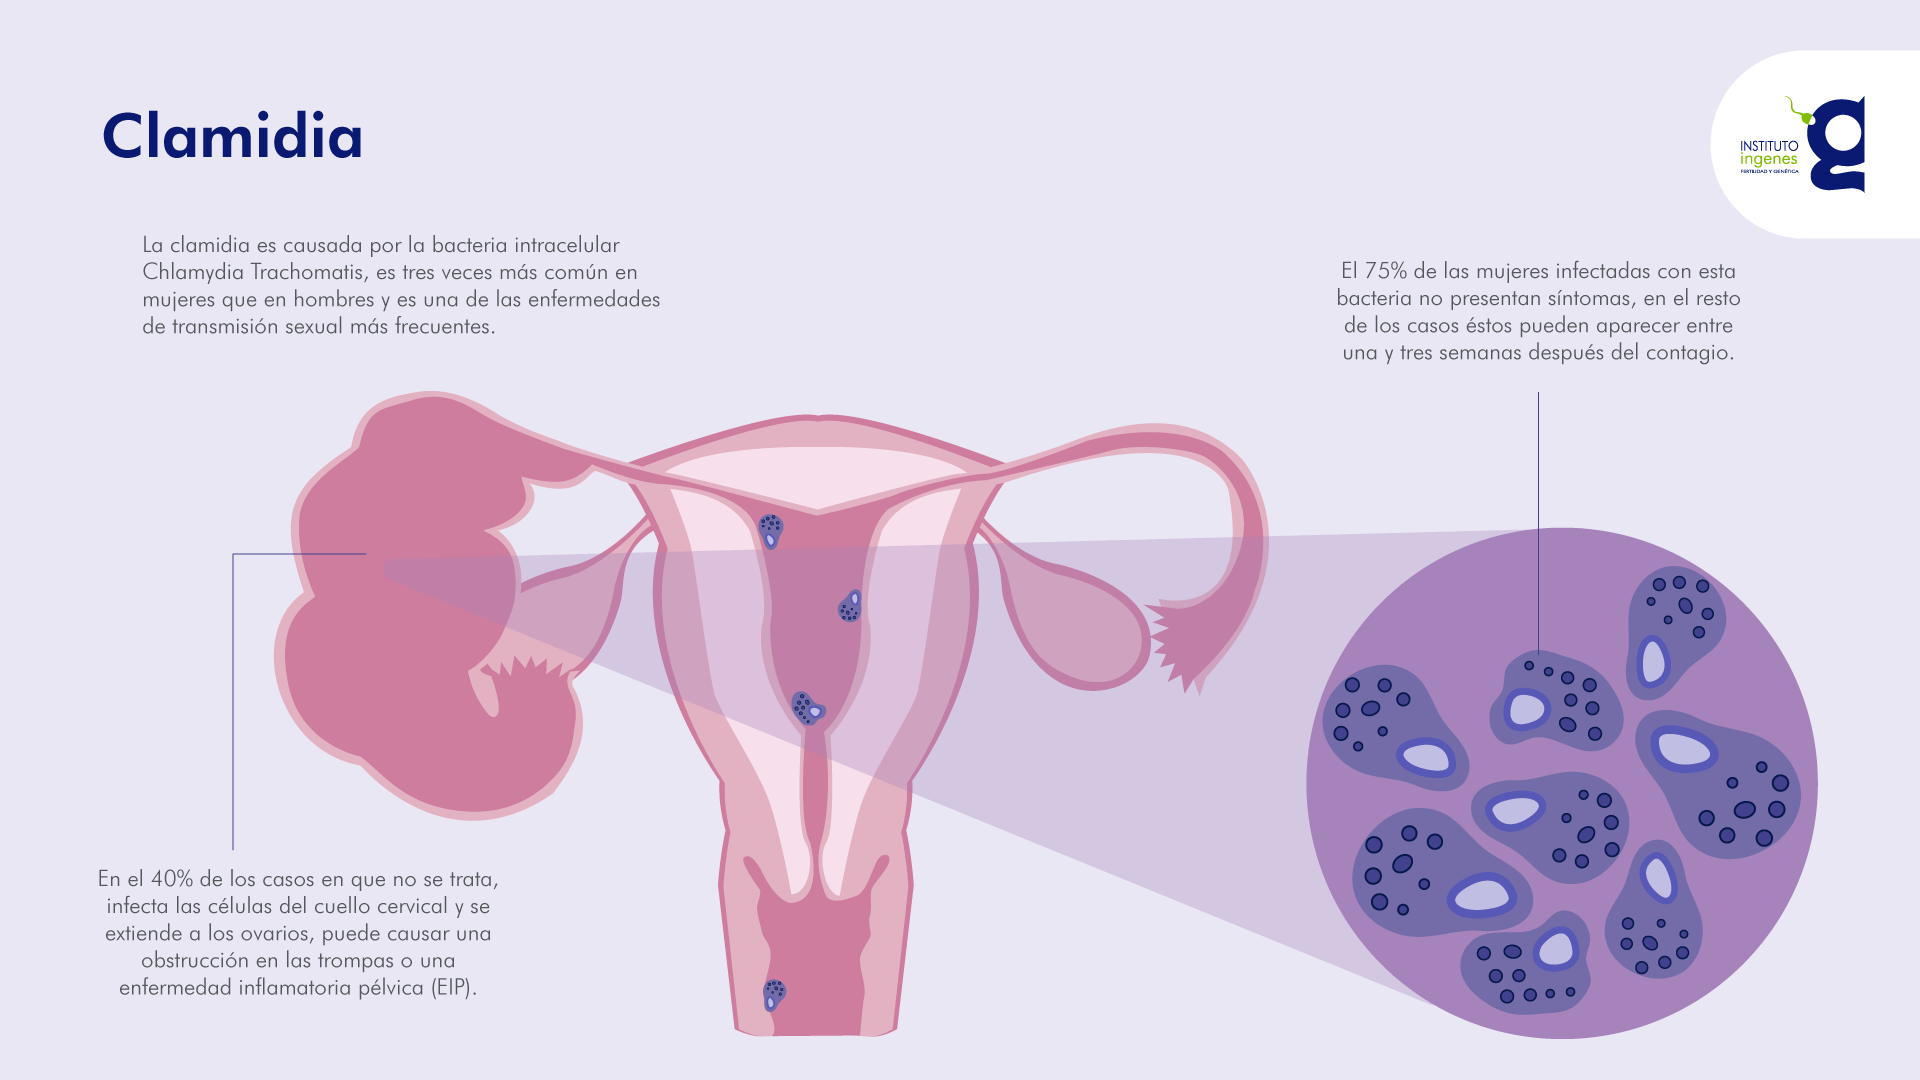 clamidia-clinicas-de-infertilidad-ingenes-reproduccion-asistida-información-sobre-clamidia-con-imagen-de-utero-presentando-este-problema-de-salud-reproductiva